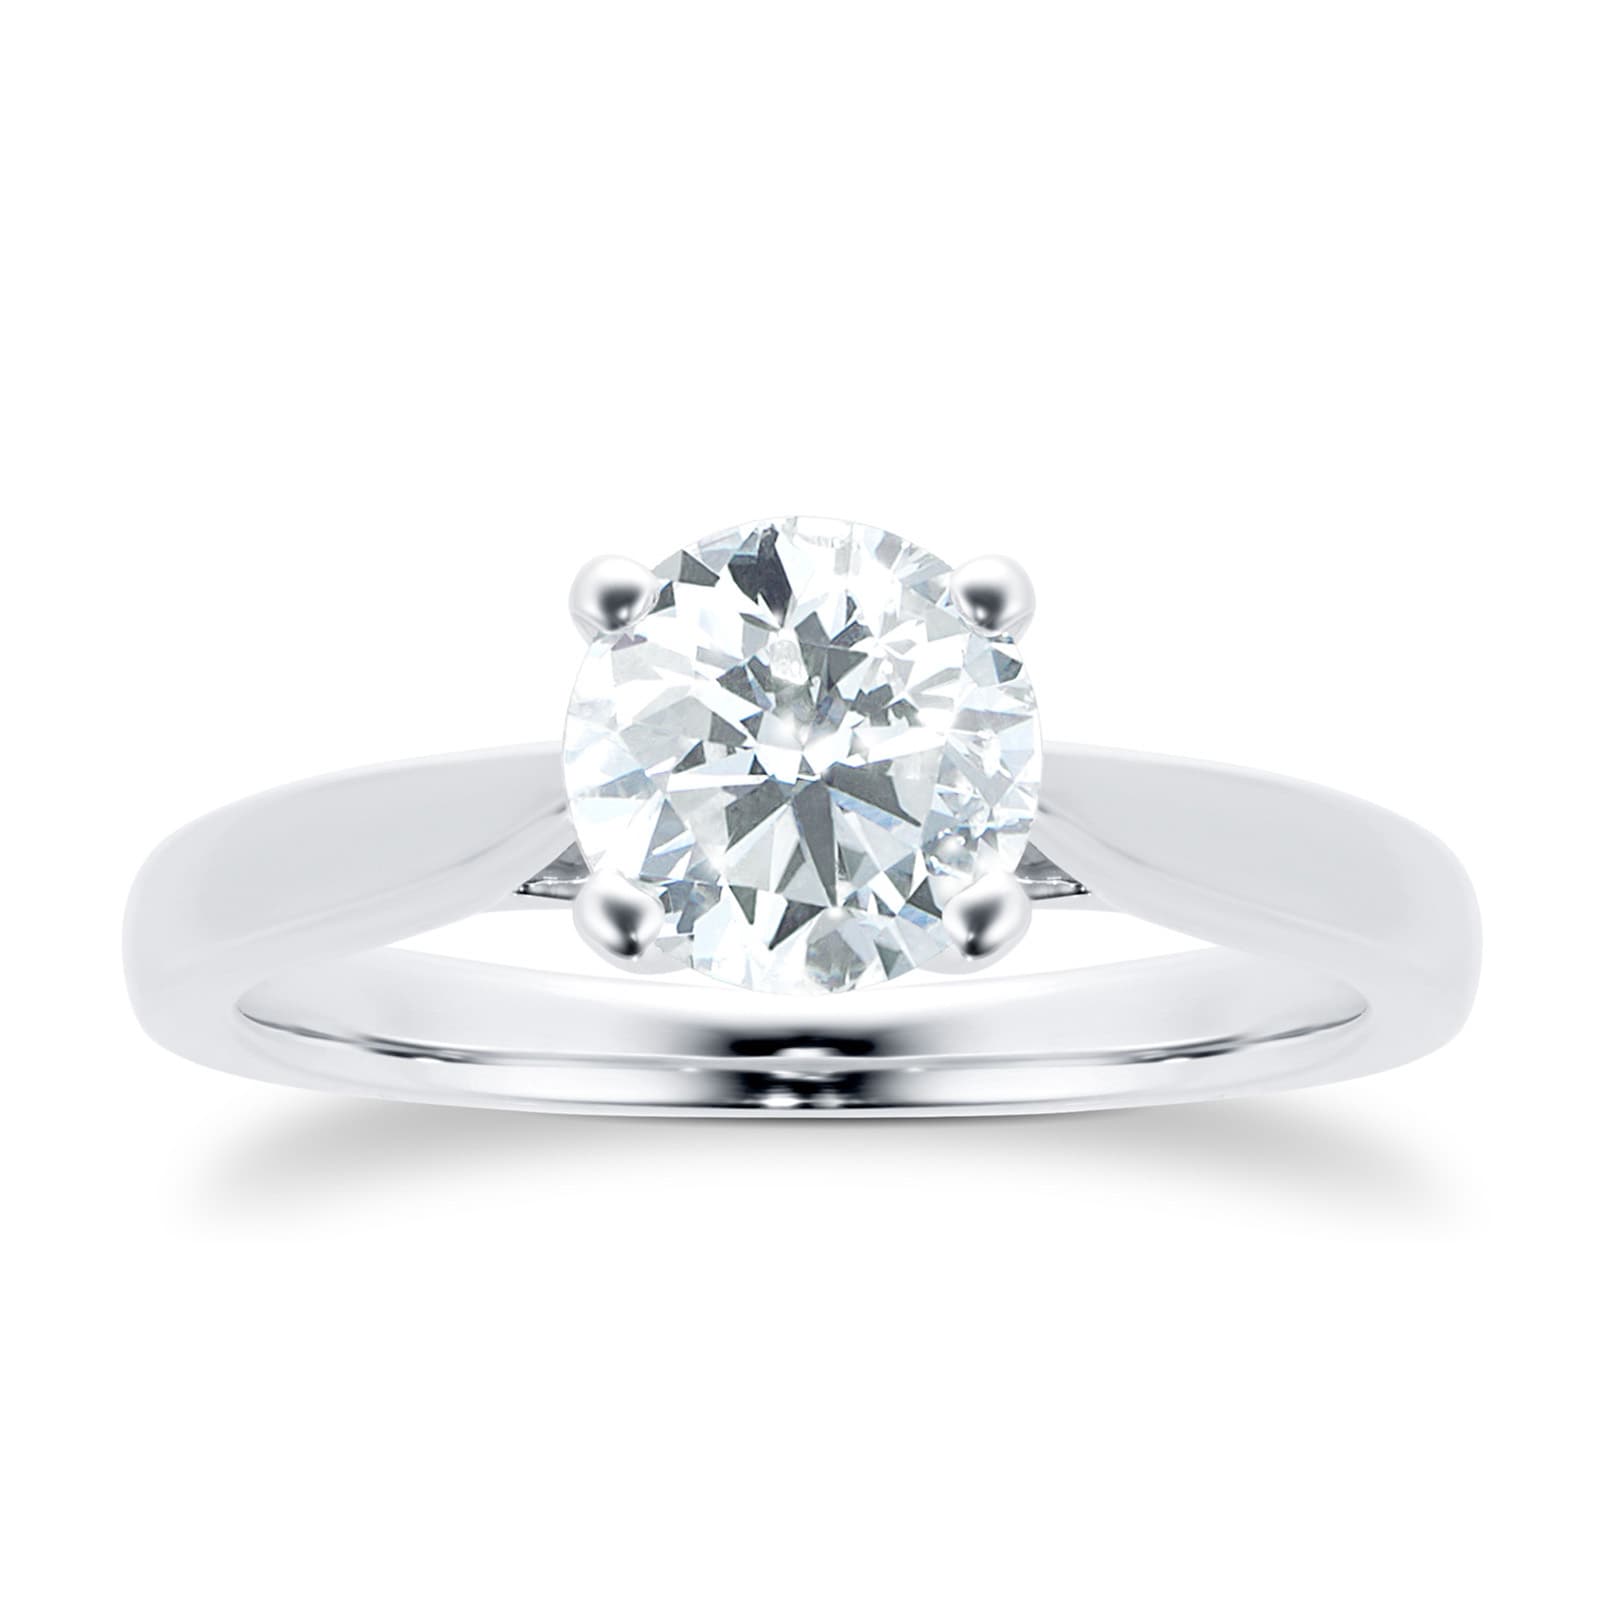 Platinum Brilliant Cut 1.00 Carat 88 Facet Diamond Ring - Ring Size Q